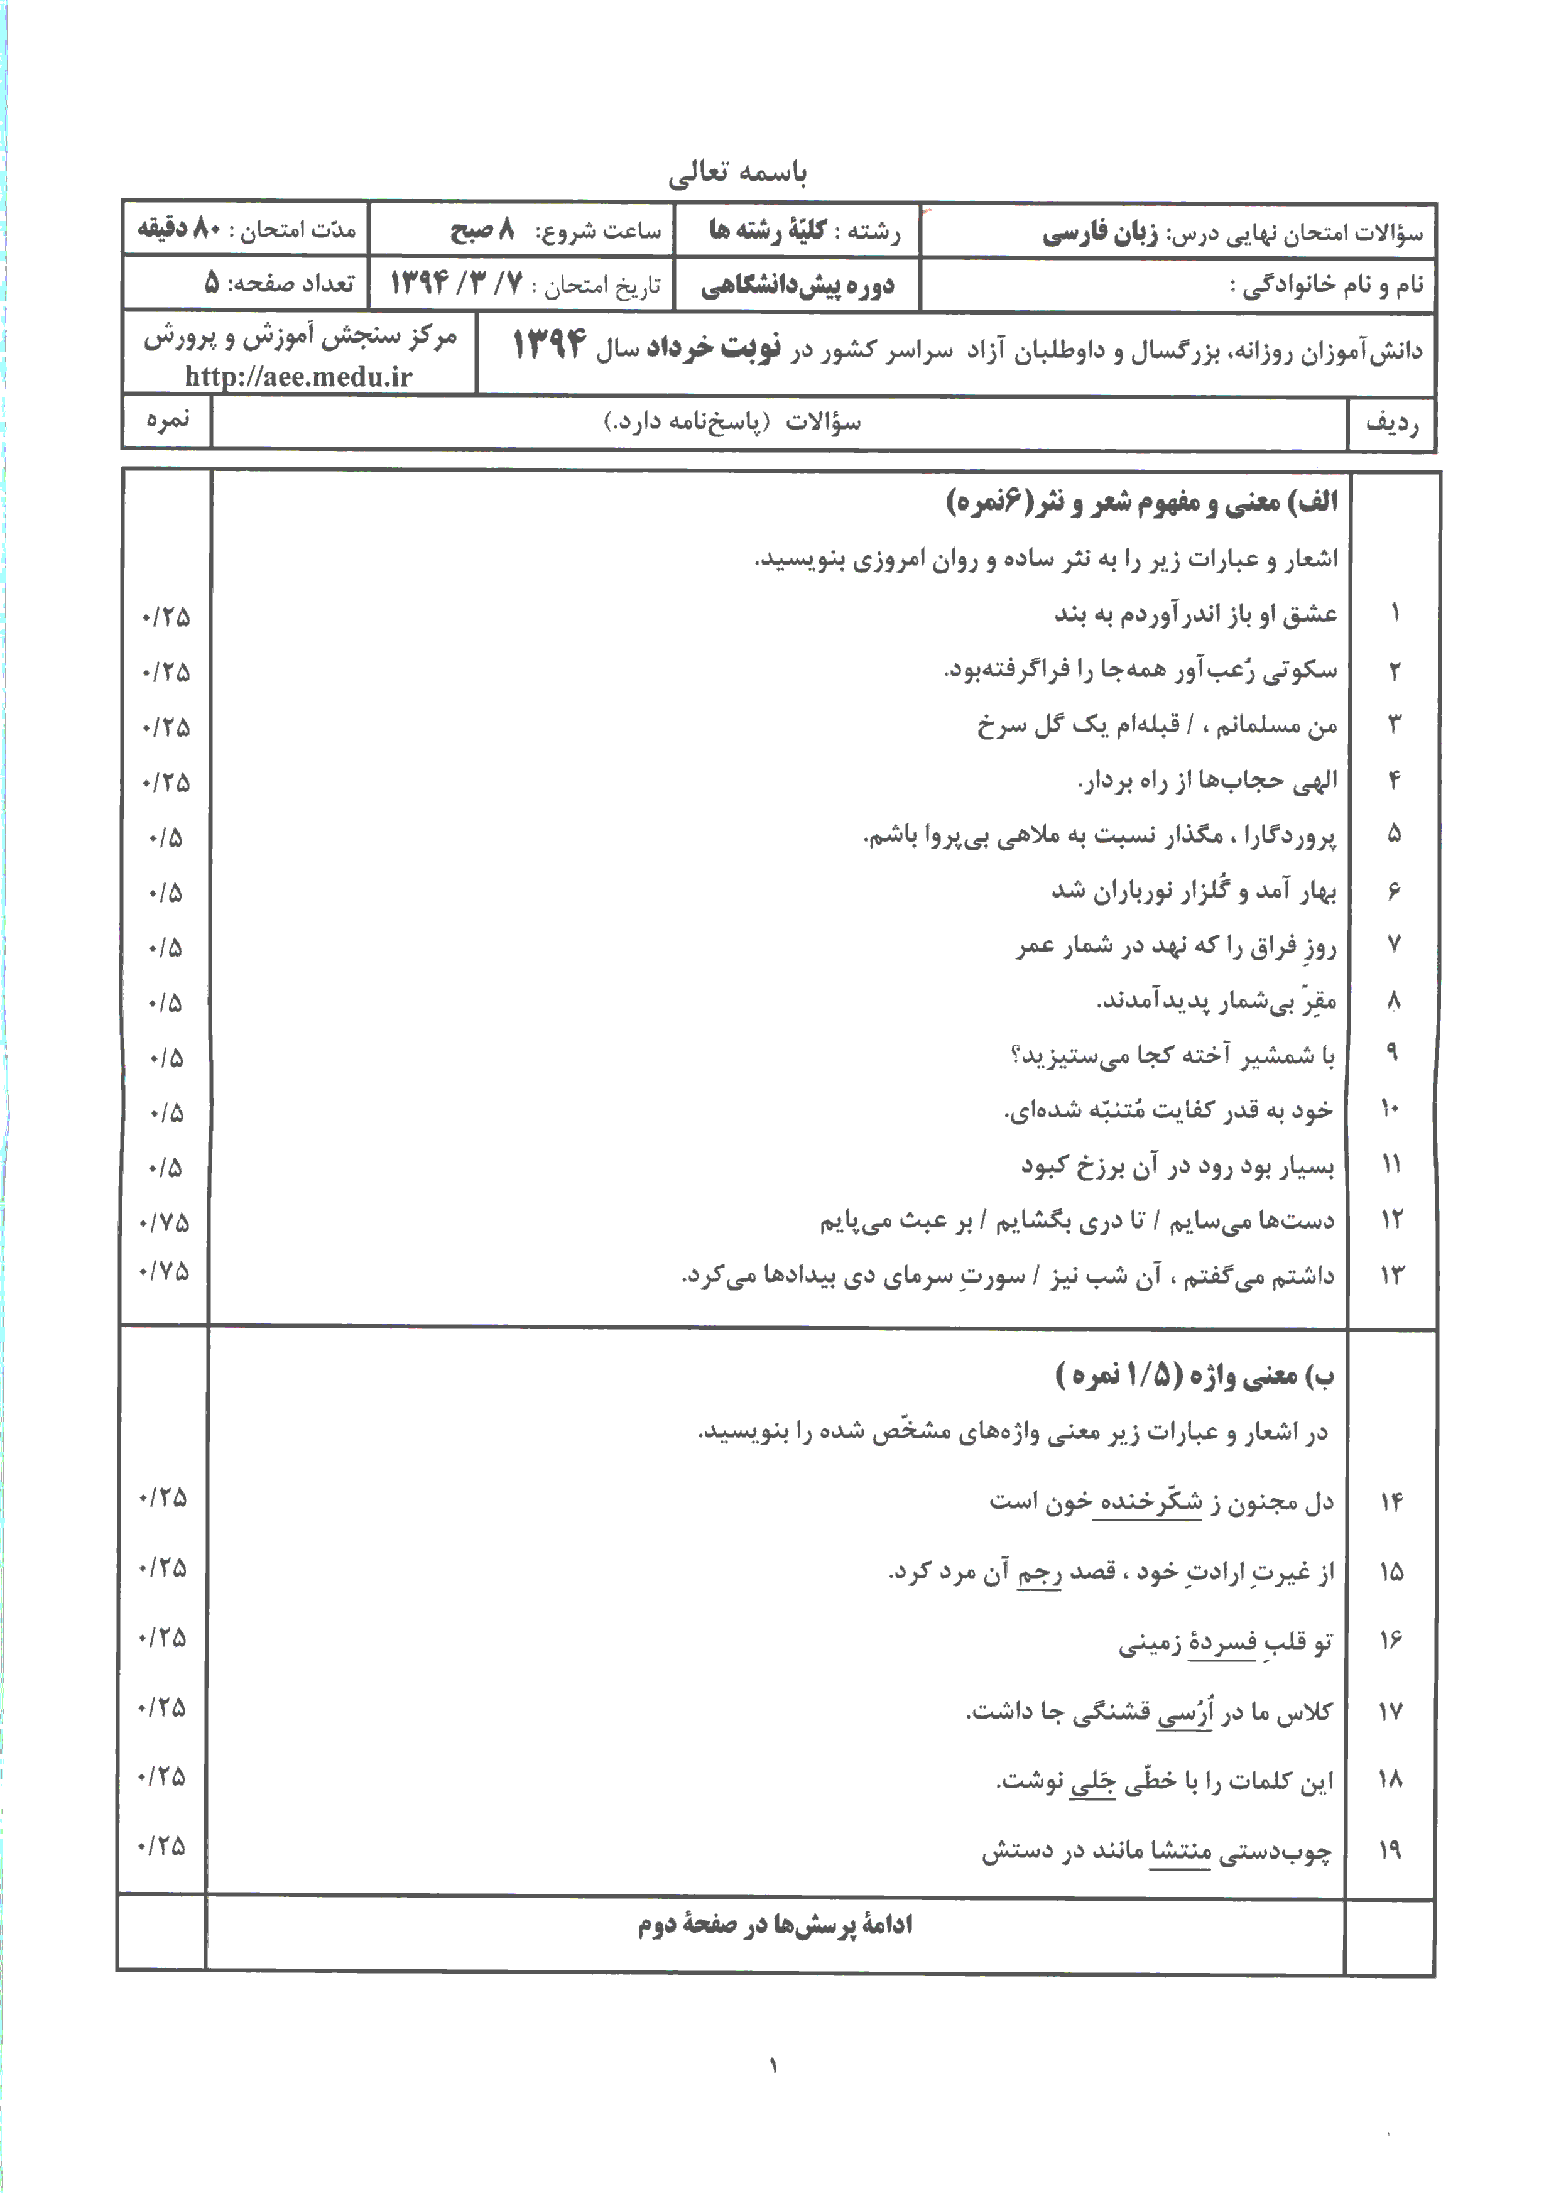 سوالات و پاسخ امتحان زبان و ادبیات فارسی چهارم دبیرستان خرداد 1394 | هماهنگ کشور